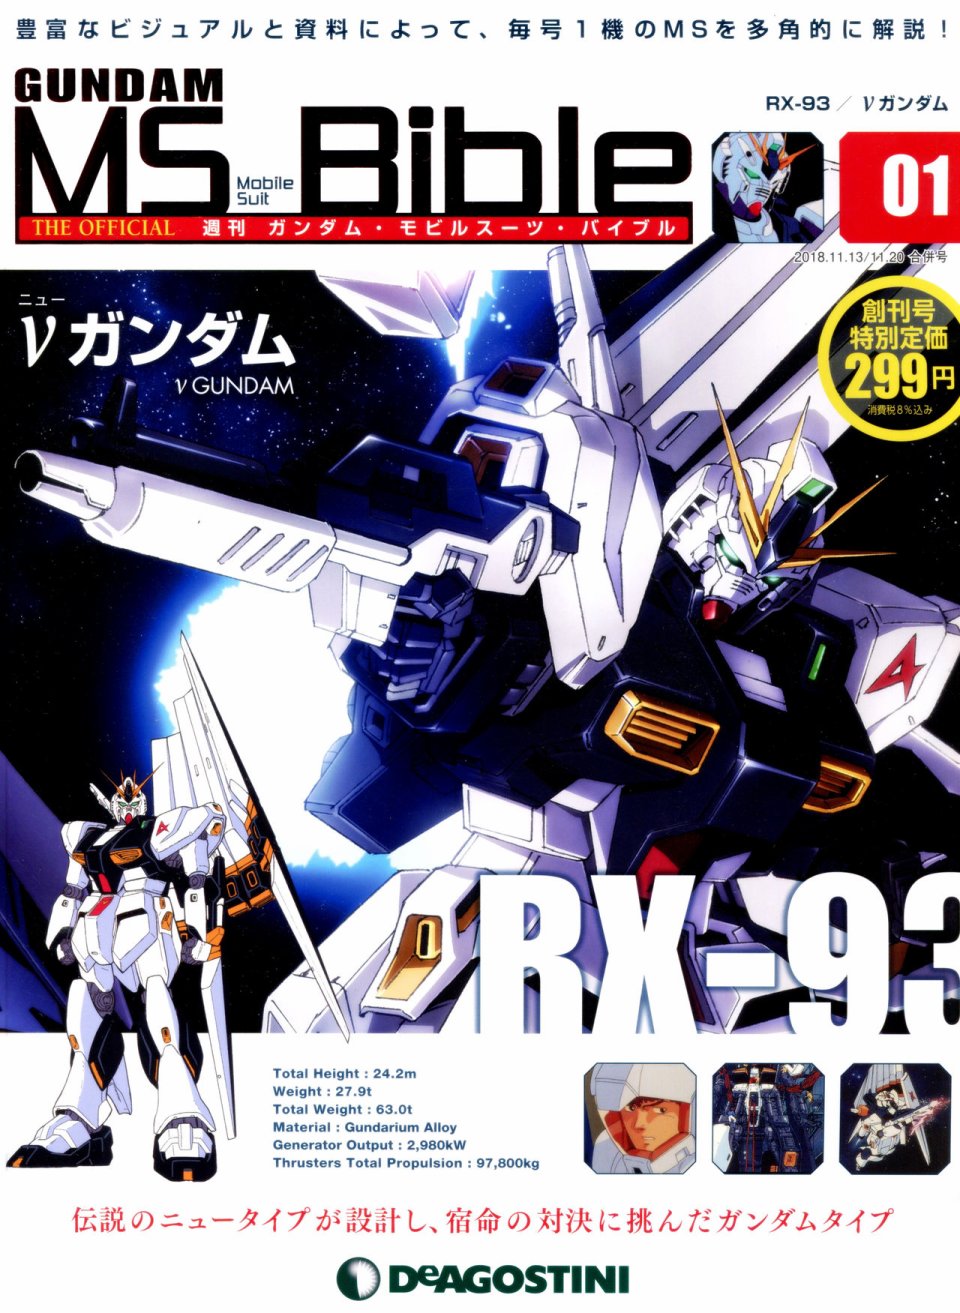 Gundam Mobile Suit Bible 【第01卷】 漫畫線上看- 動漫戲說(ACGN.cc)